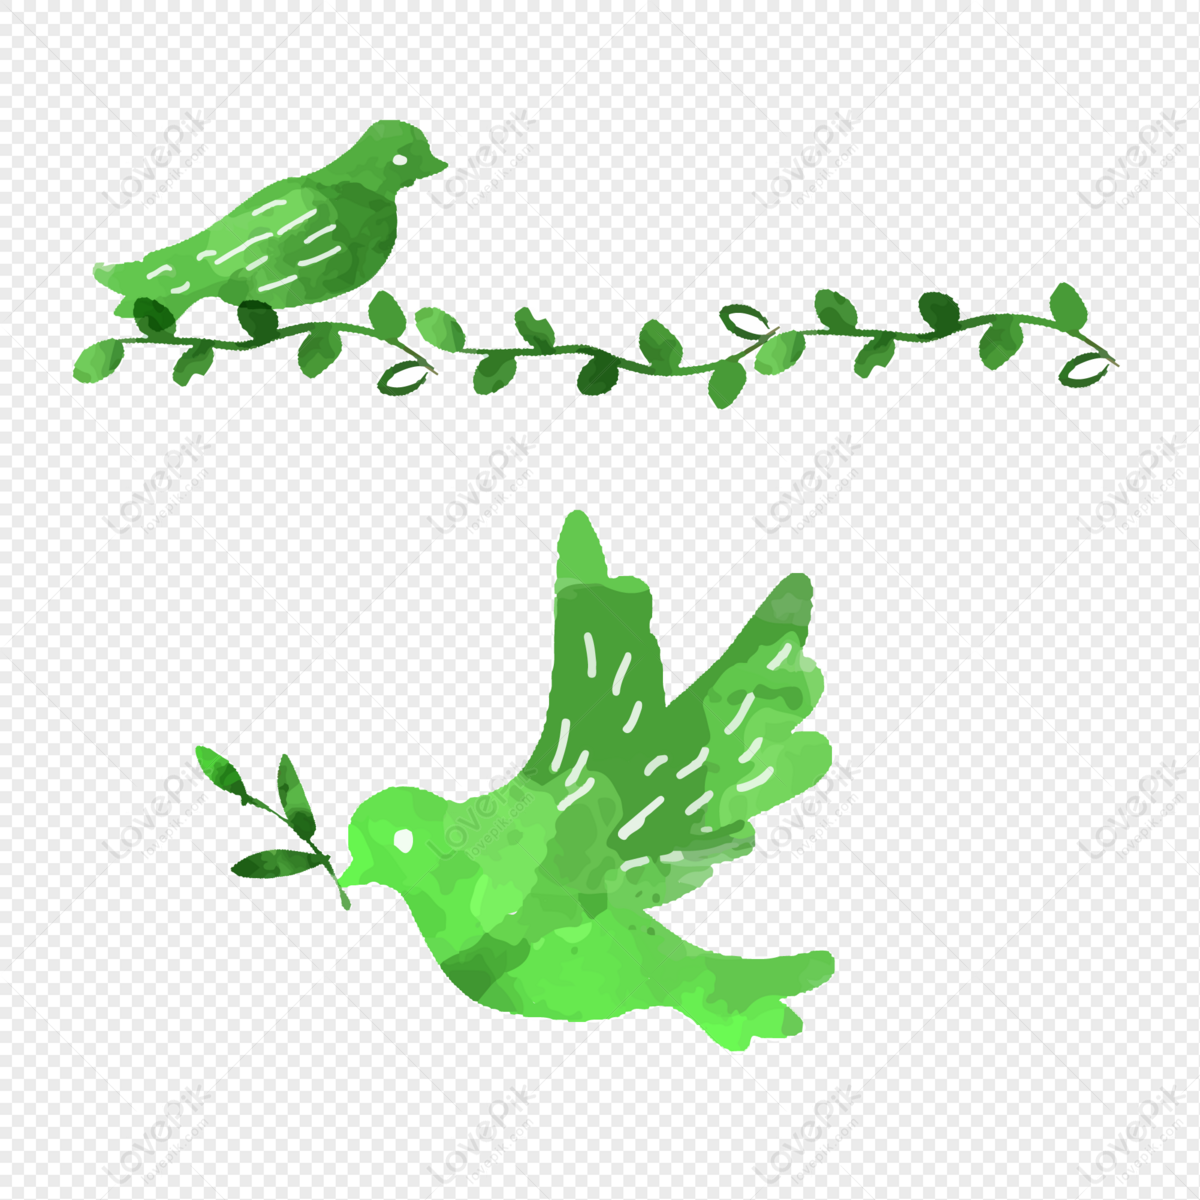 green bird anime